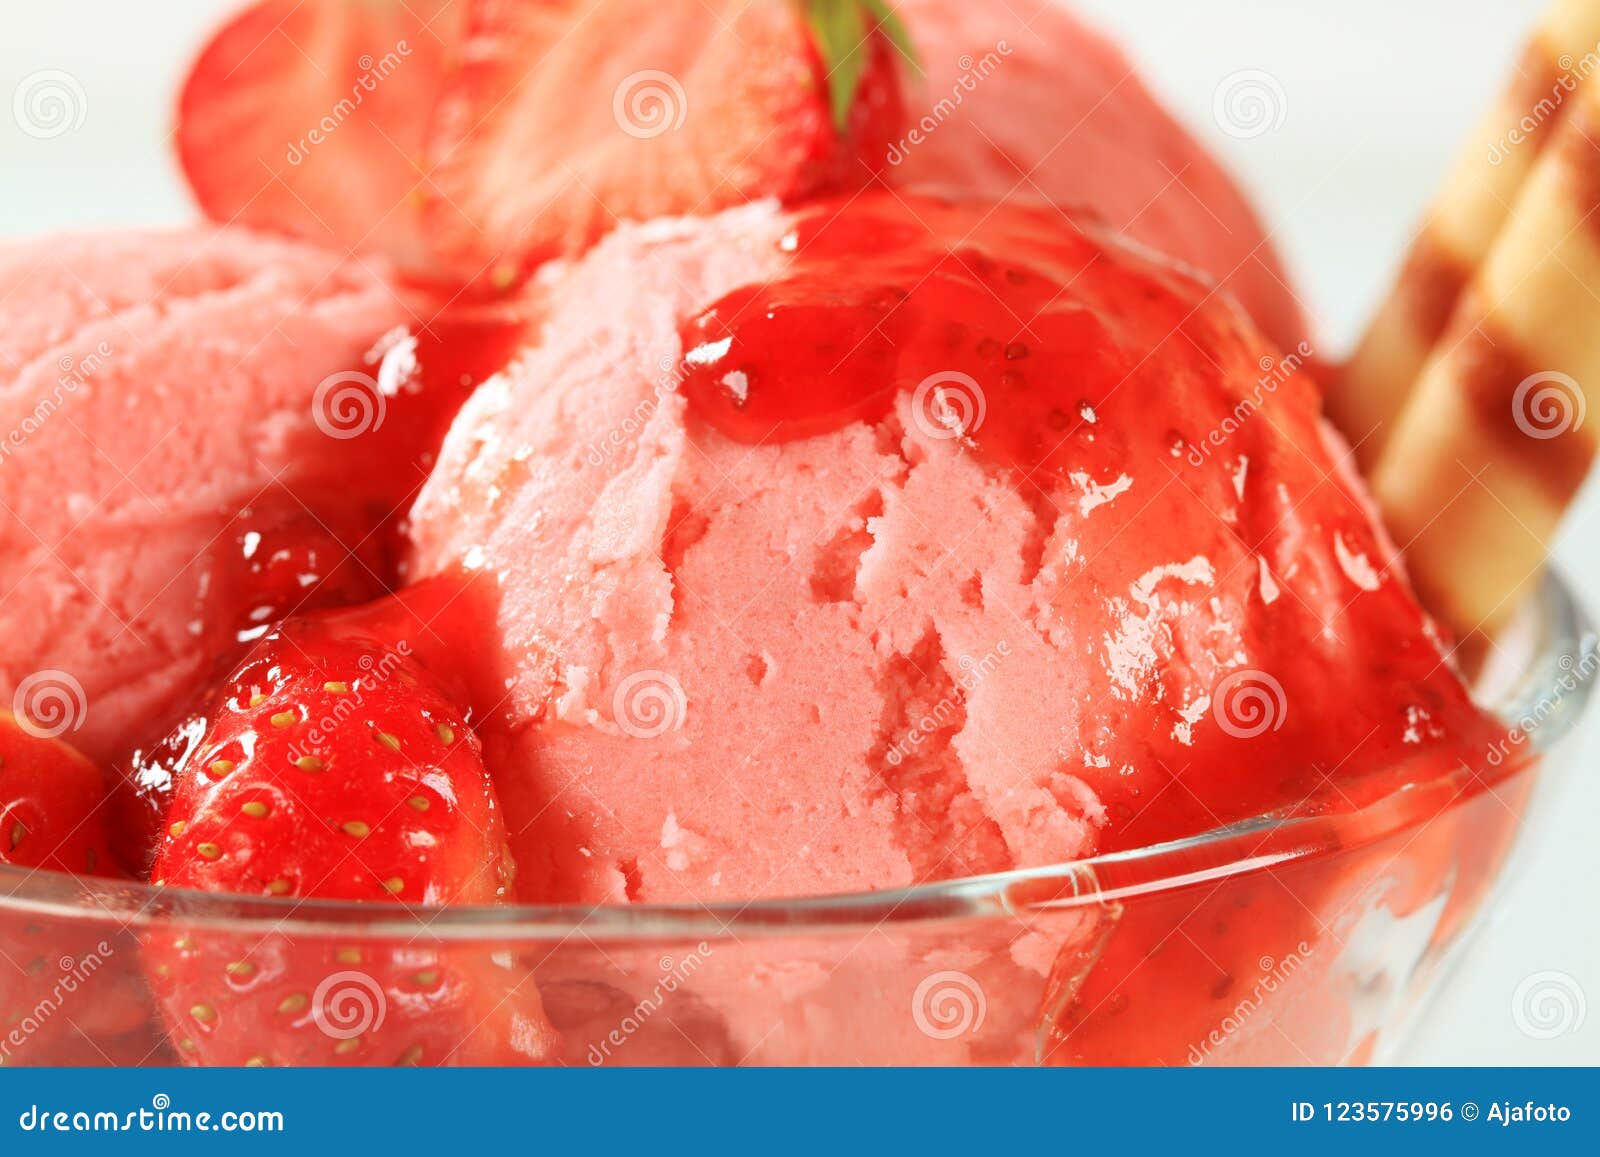 草莓冰激凌素材-草莓冰激凌图片-草莓冰激凌素材图片下载-觅知网